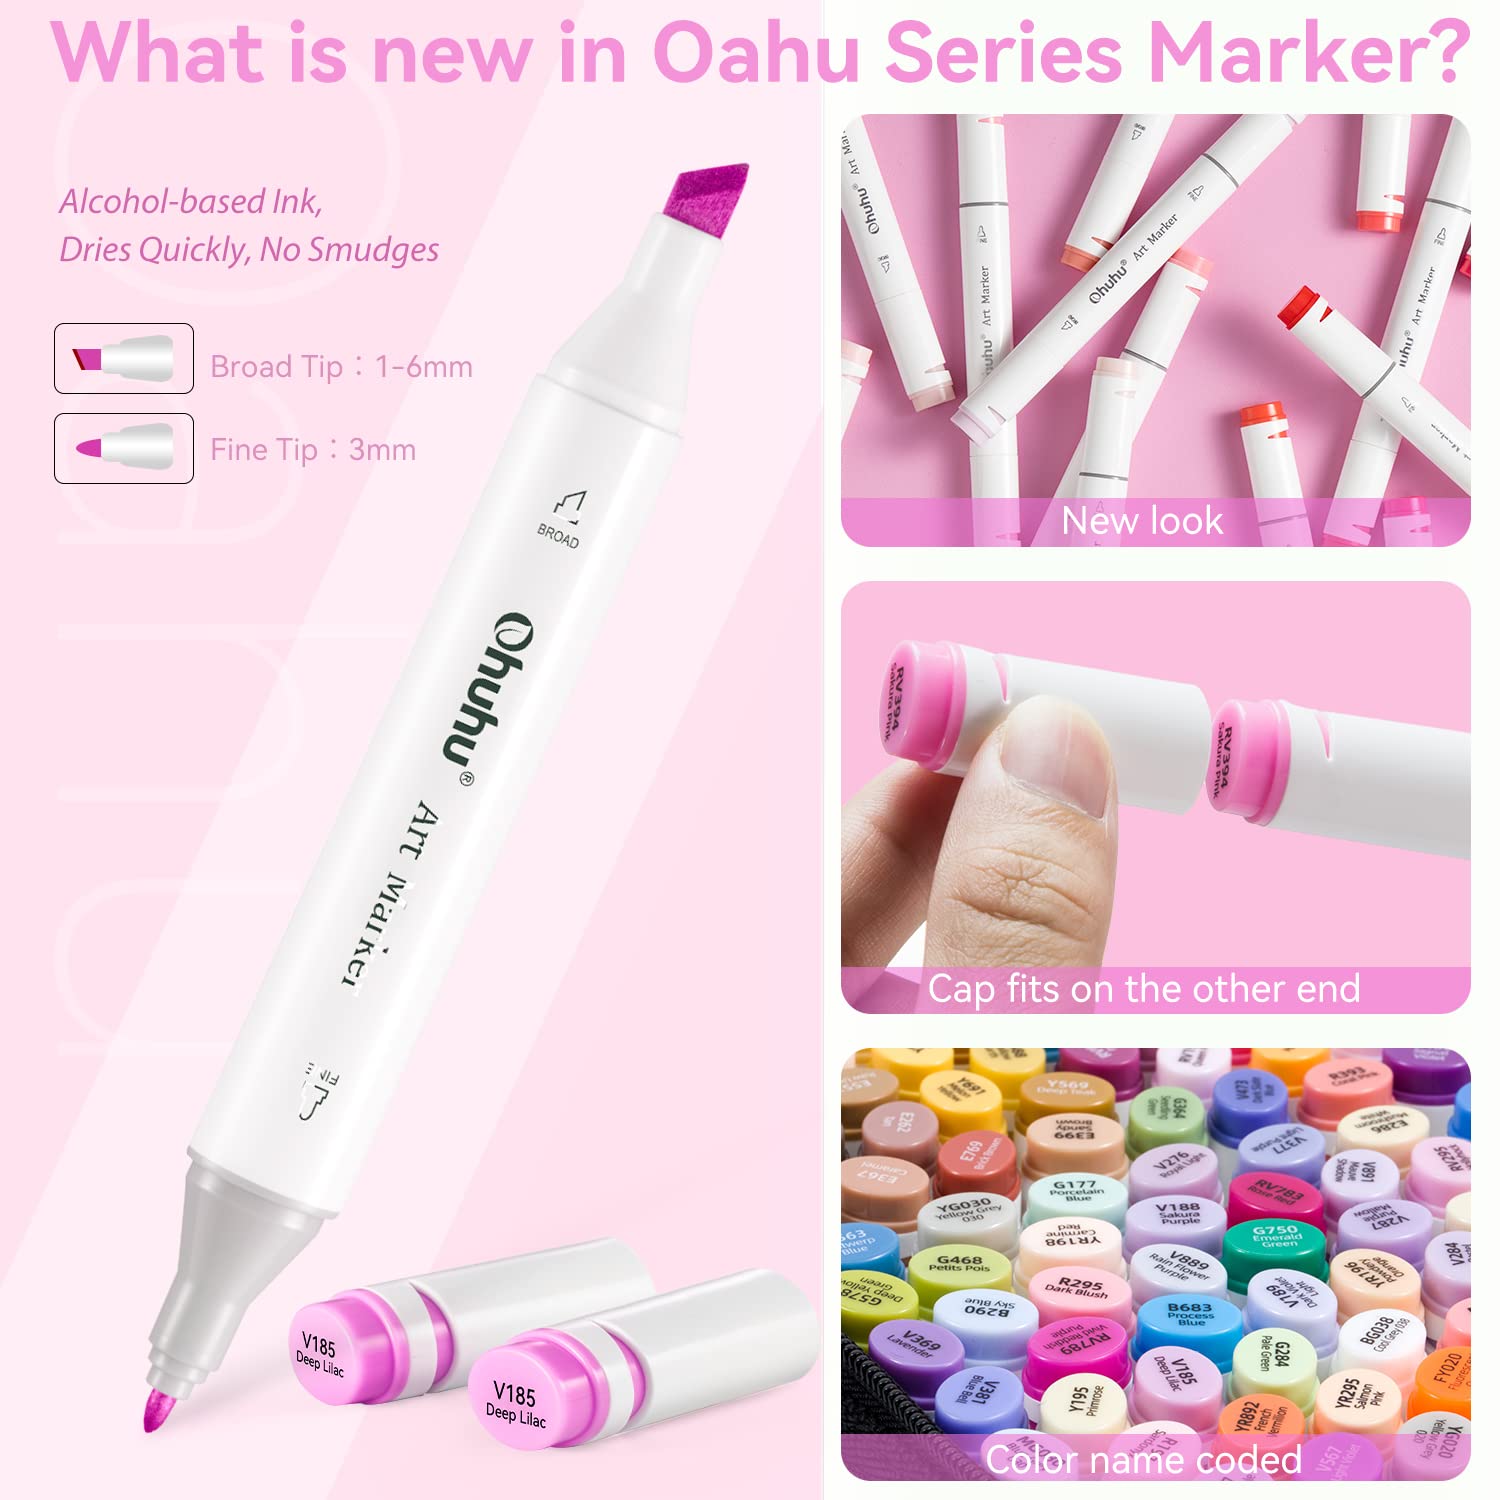 Ohuhu Oahu 320 Colors Dual Tips Alcohol Art Markers, Fine & Chisel – ohuhu